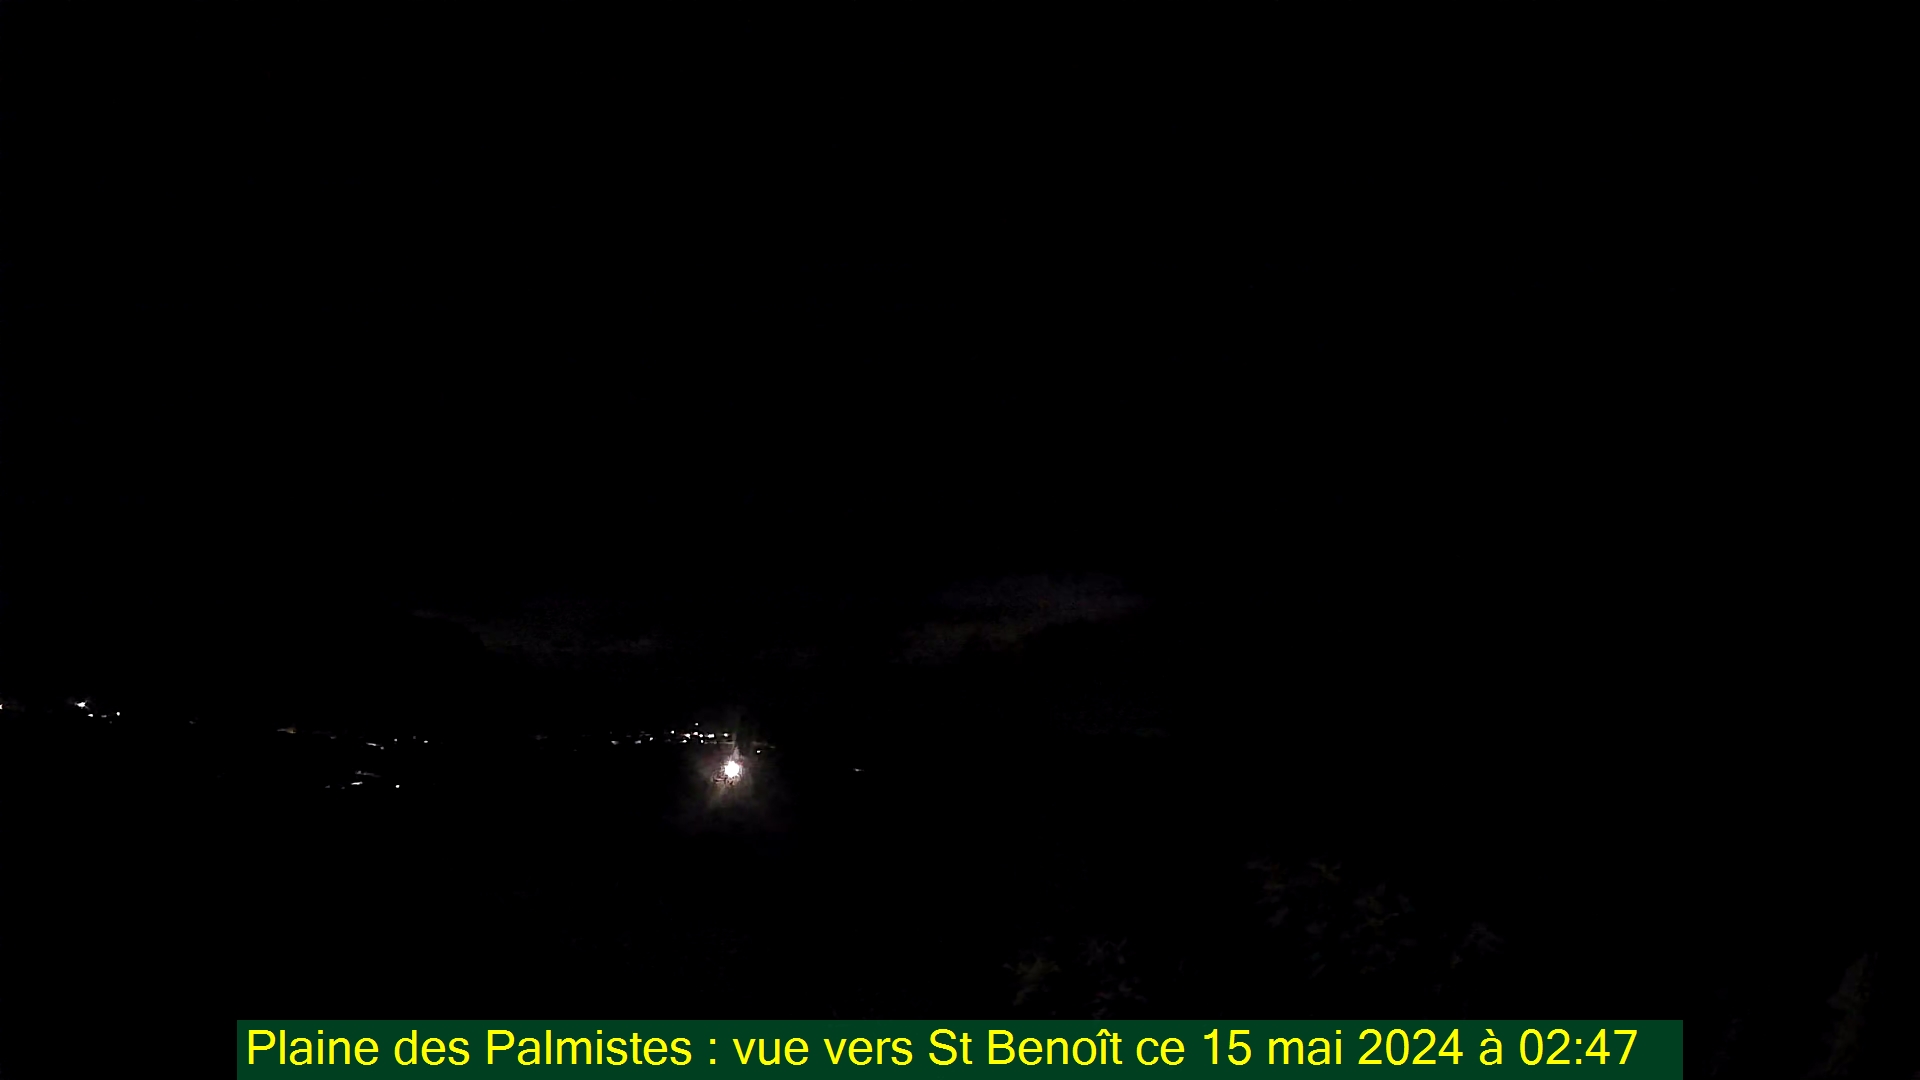 Saint-Denis (Réunion) Søn. 02:50